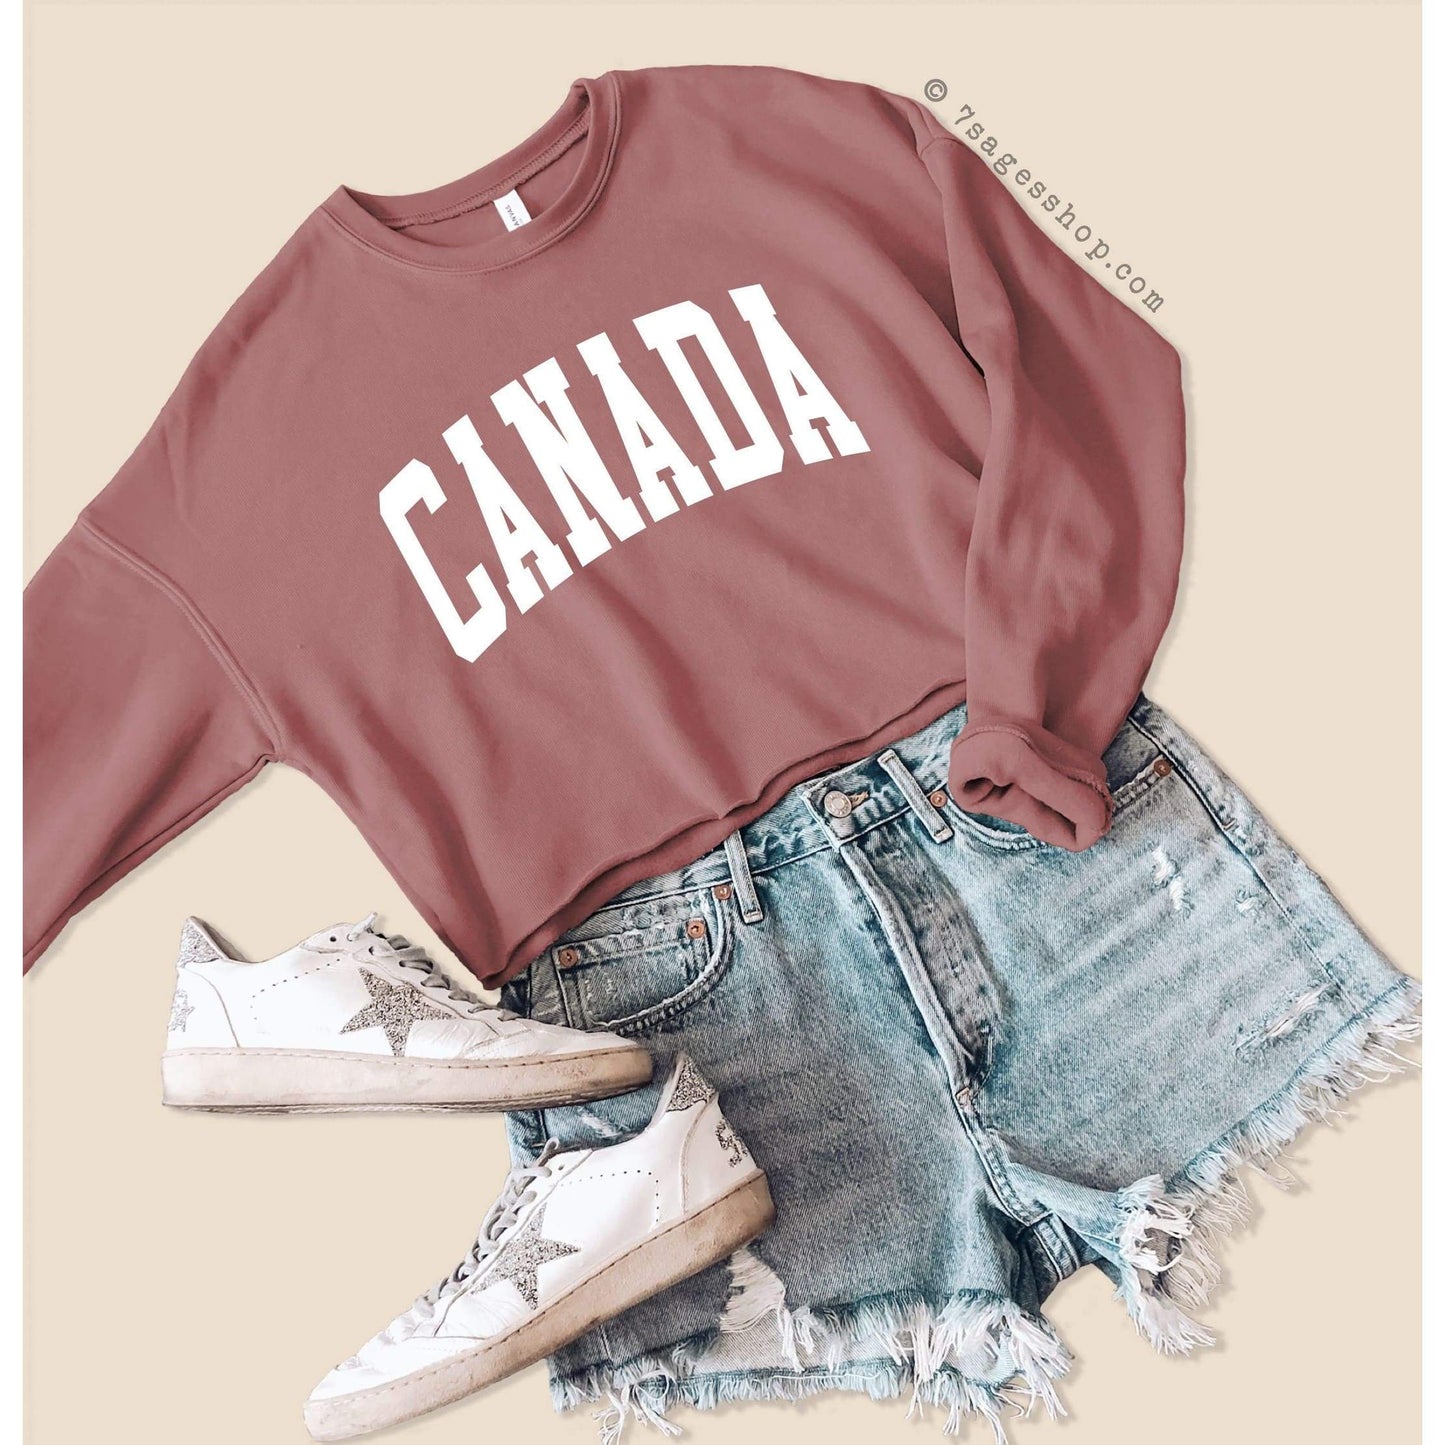 Canada Cropped Sweatshirt - Canada Sweatshirt - Canada Shirt - Canada Crop Top - Fleece Crewneck Sweater